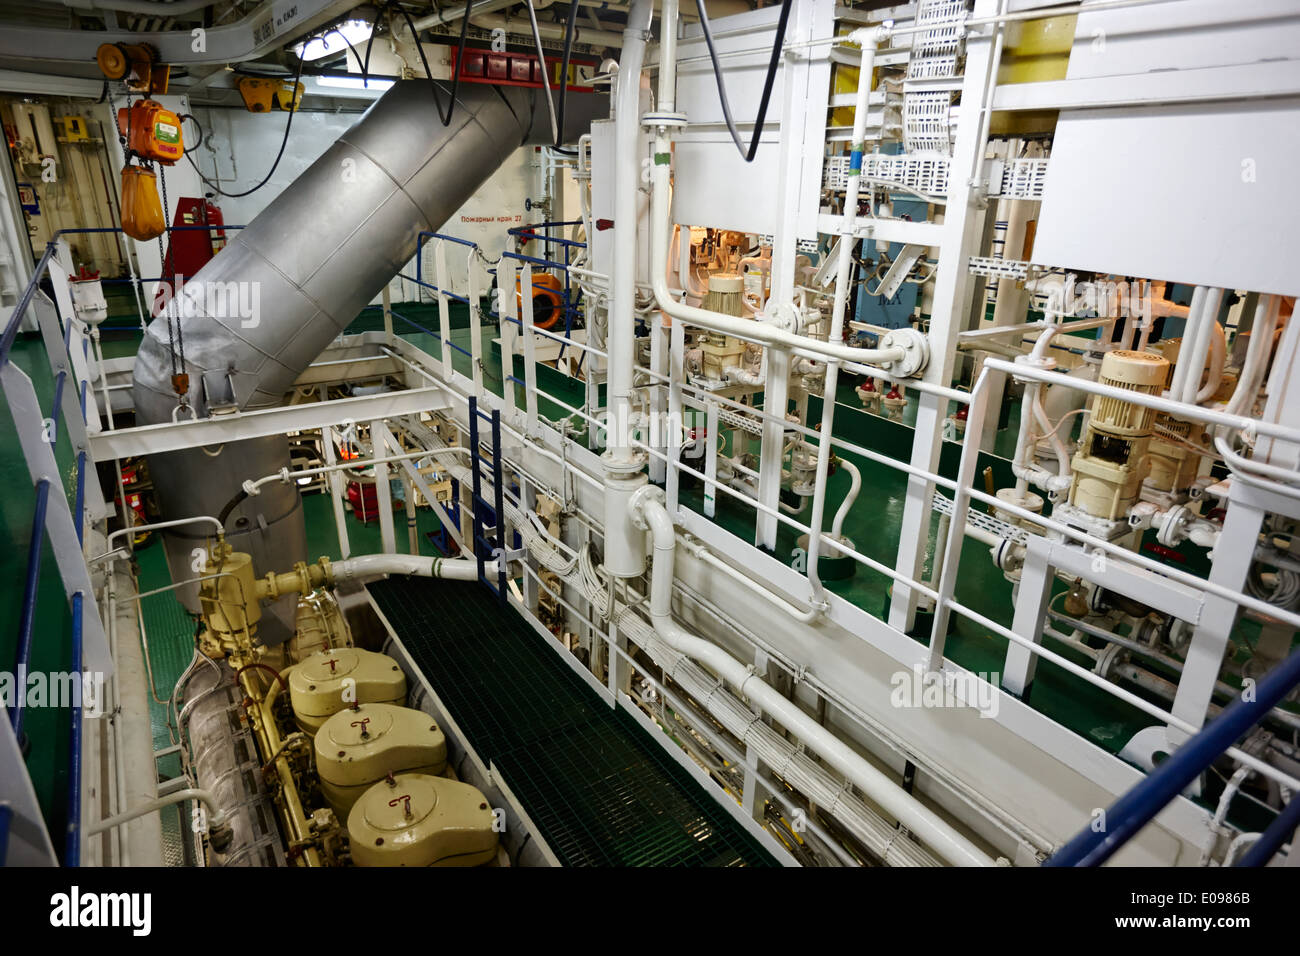 Maschinenraum an Bord der russischen Forschung Schiff Akademik sergey Vavilov auf hoher See Stockfoto